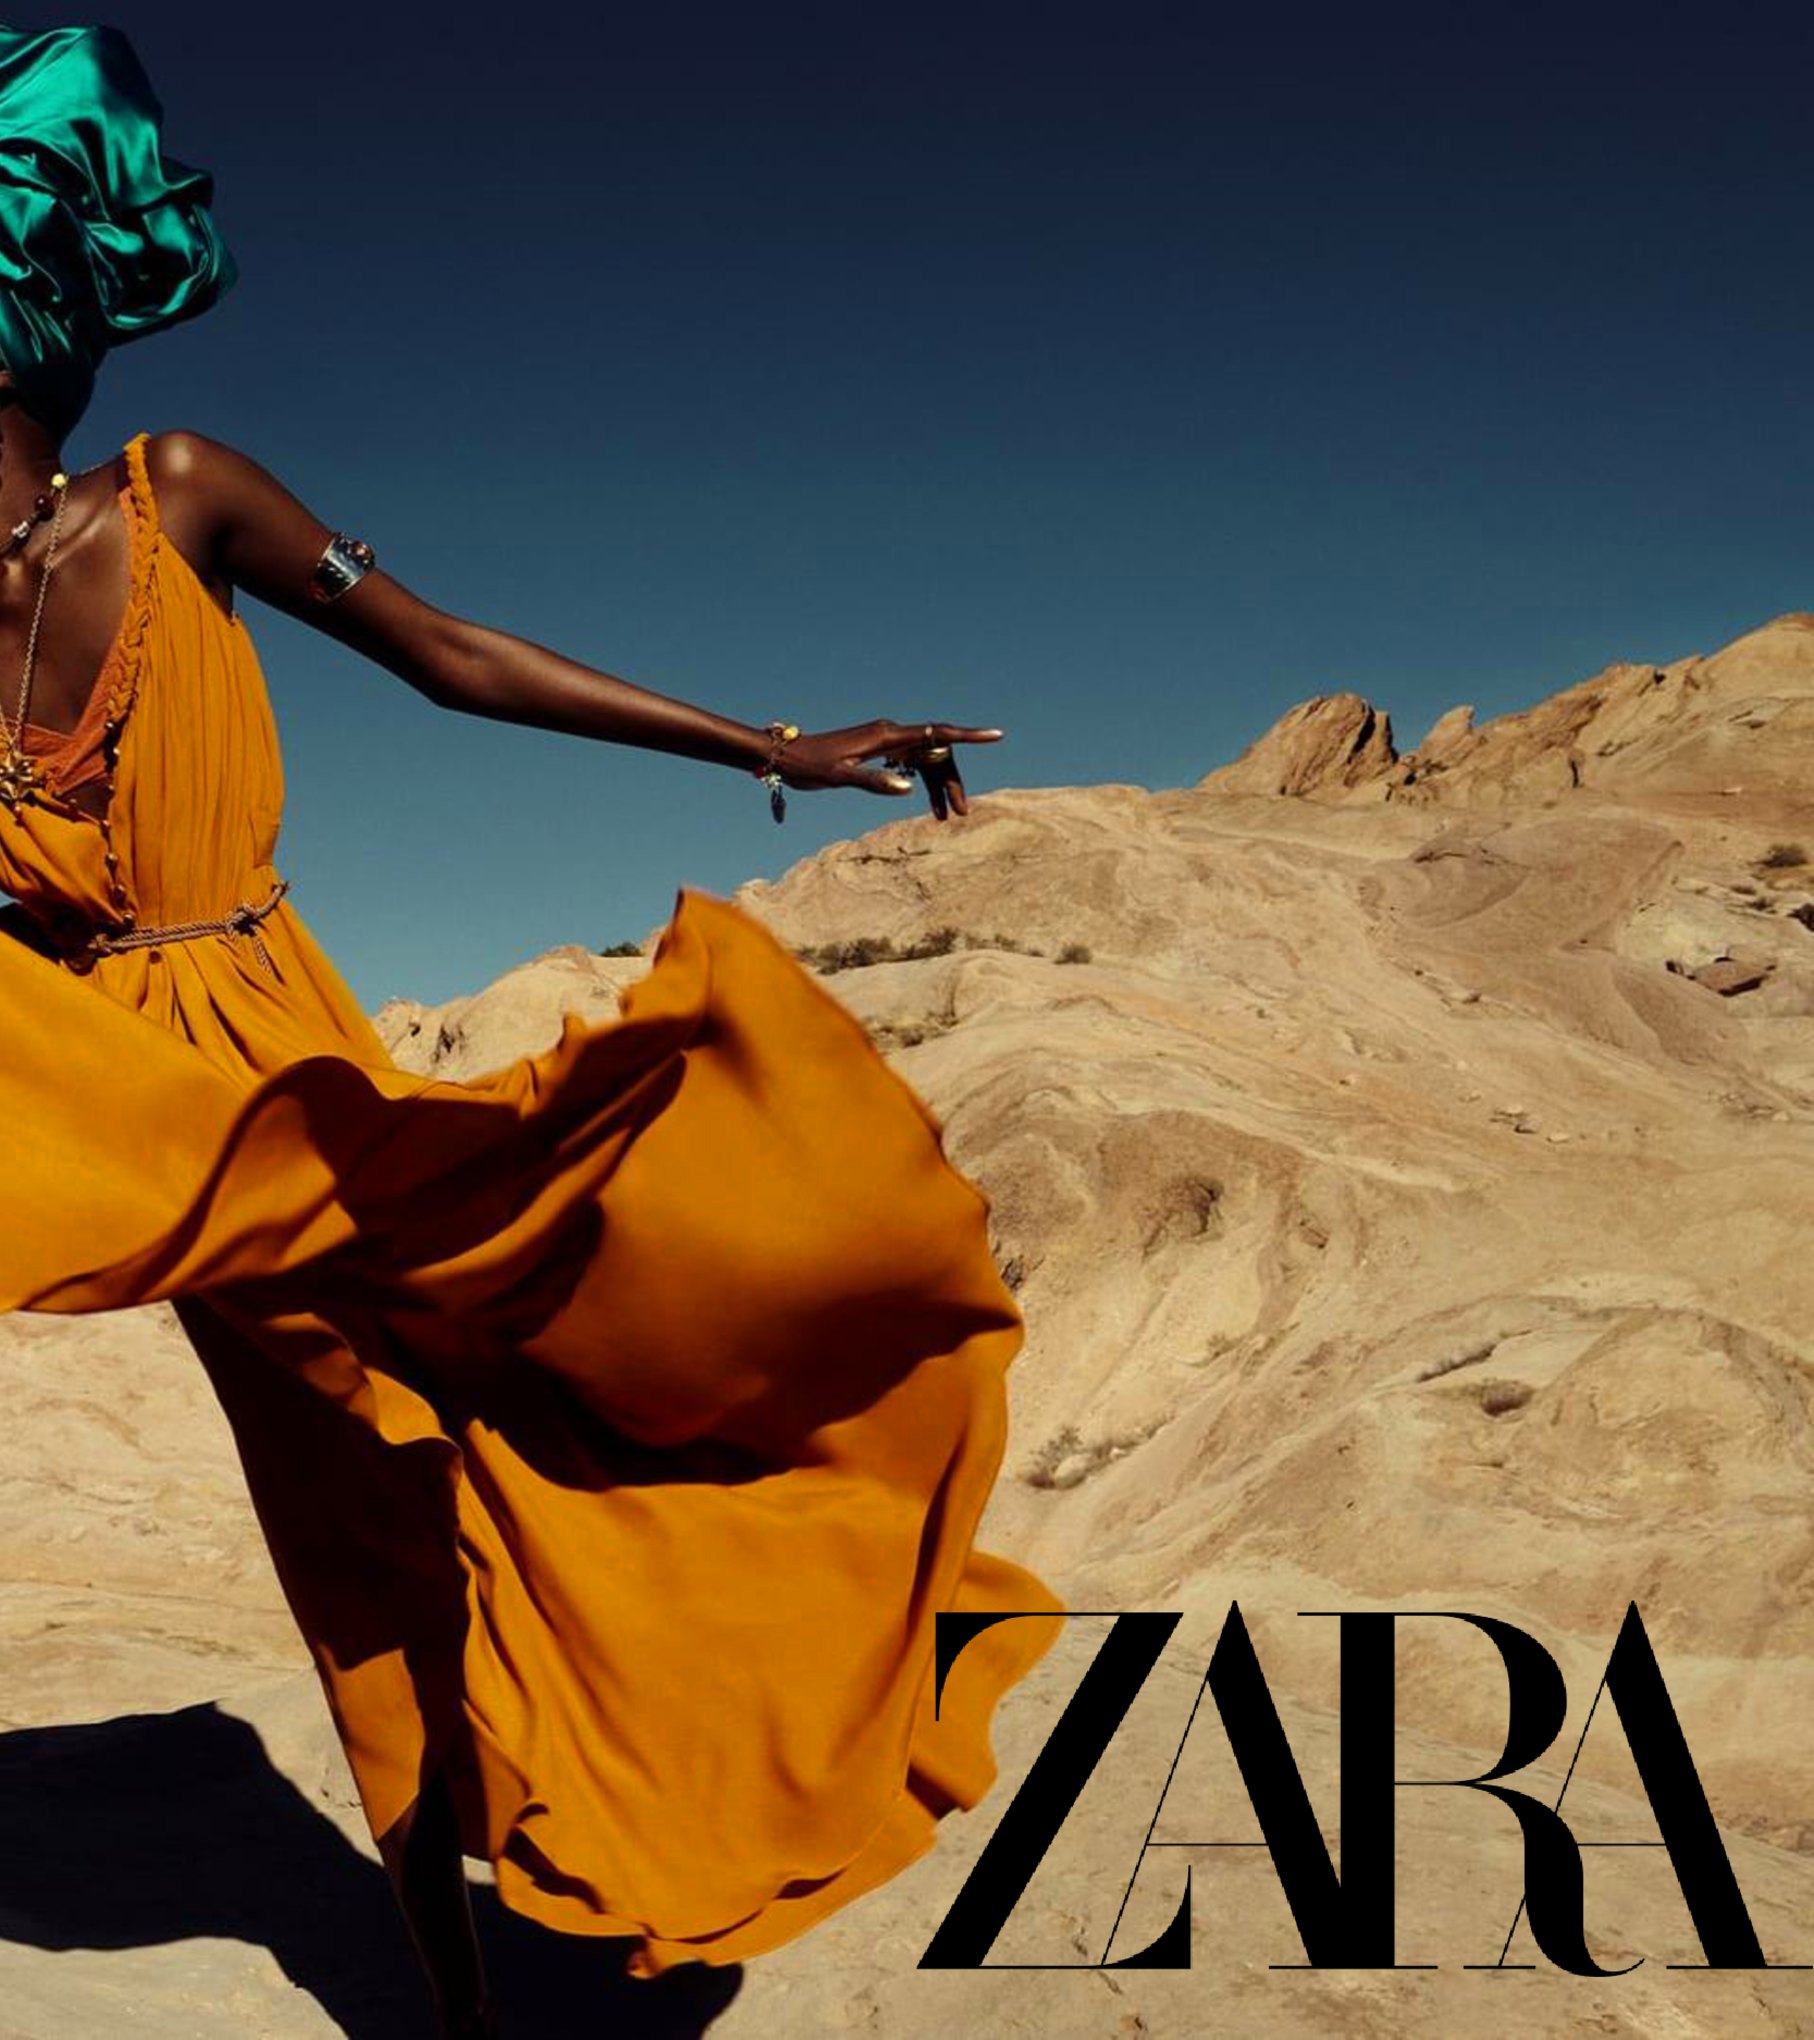 1-Nouveautés Zara Catalogue Avril 2021